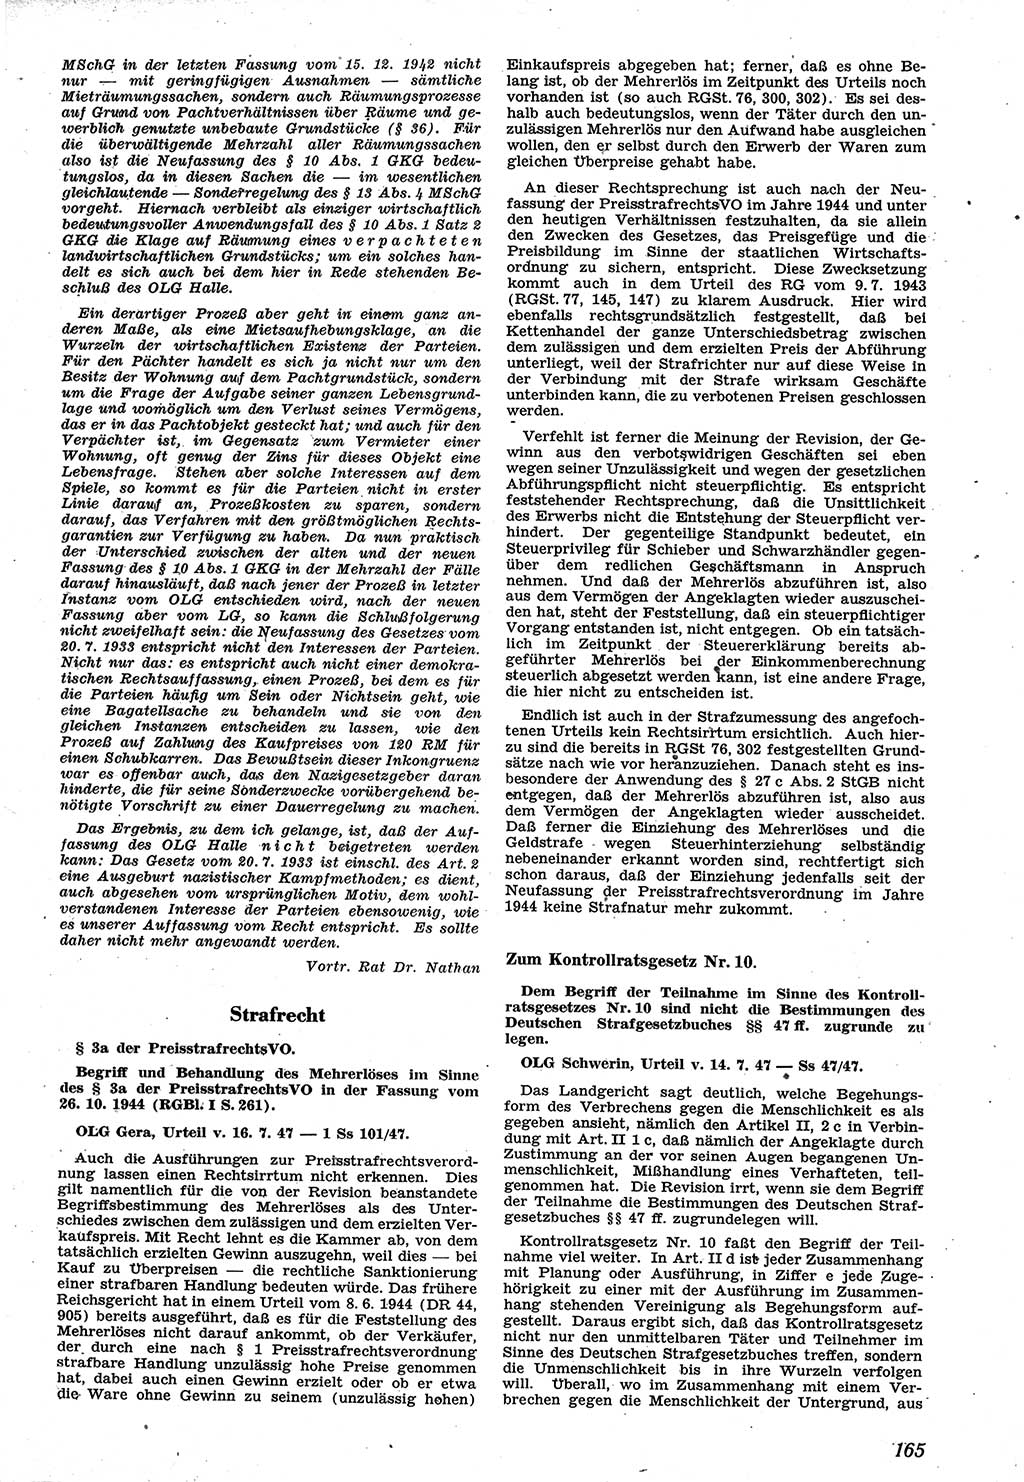 Neue Justiz (NJ), Zeitschrift für Recht und Rechtswissenschaft [Sowjetische Besatzungszone (SBZ) Deutschland], 1. Jahrgang 1947, Seite 165 (NJ SBZ Dtl. 1947, S. 165)